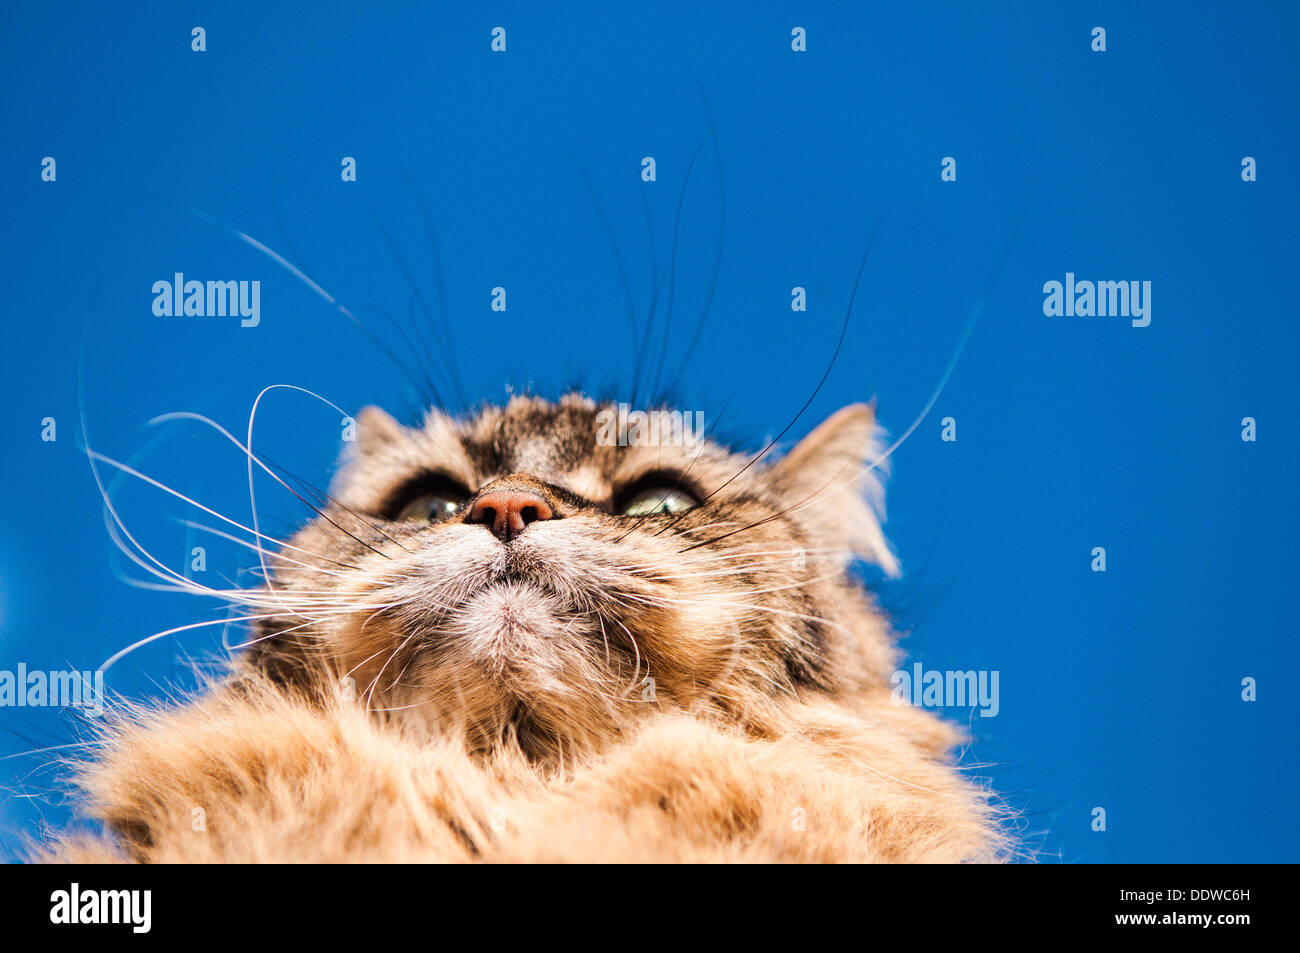 Furry pet cat portrait Stock Photo